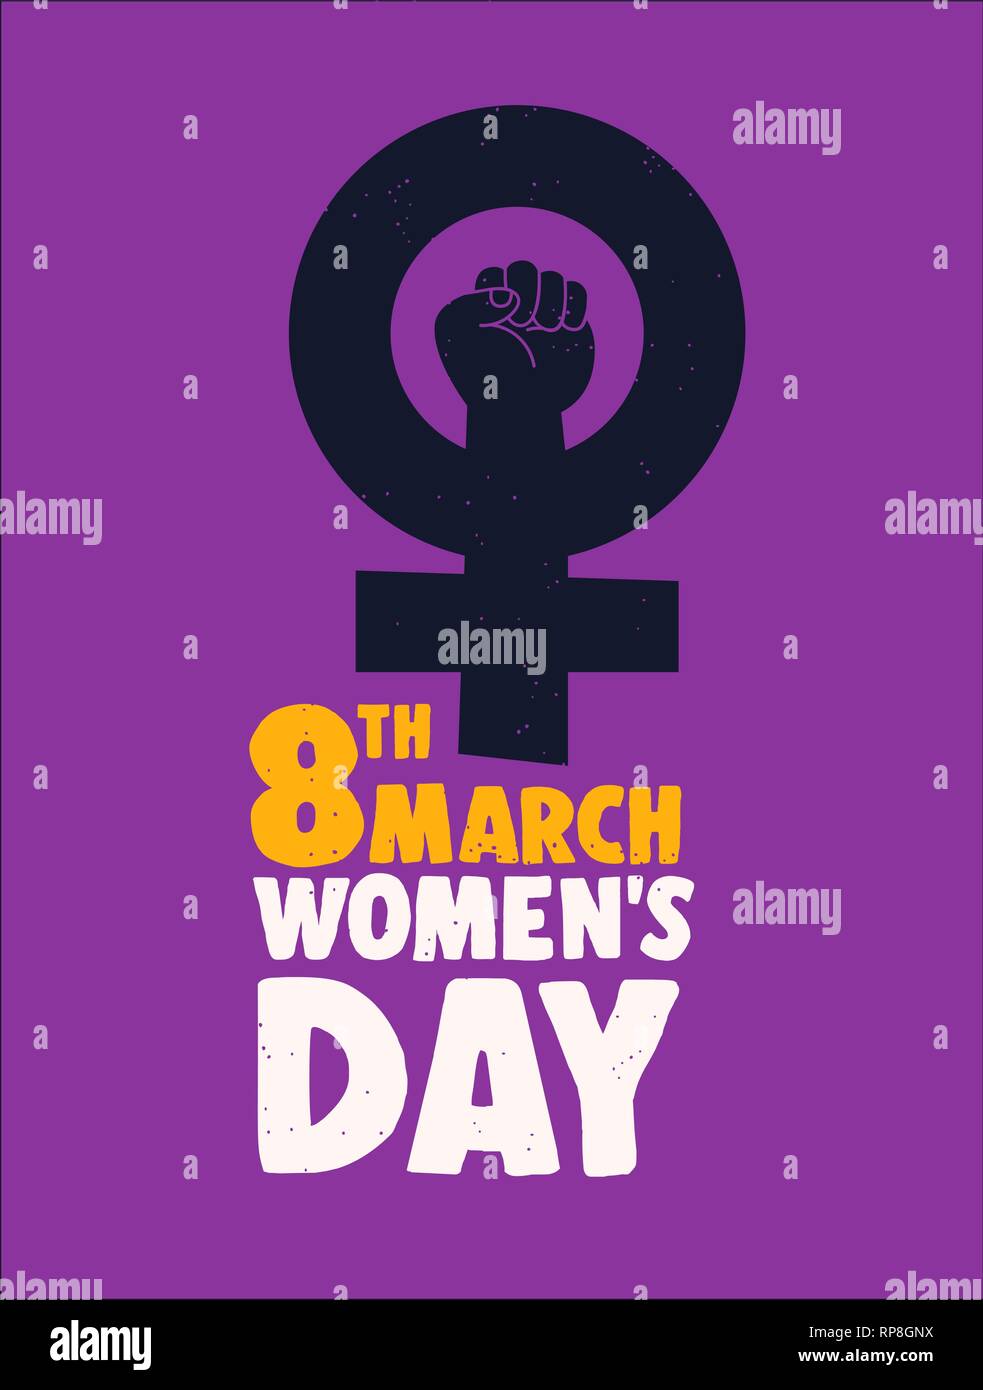 Internationaler Tag der Frauen 8. März poster Abbildung. Feministische weibliches Symbol für die Gleichberechtigung und die Frau macht. Stock Vektor